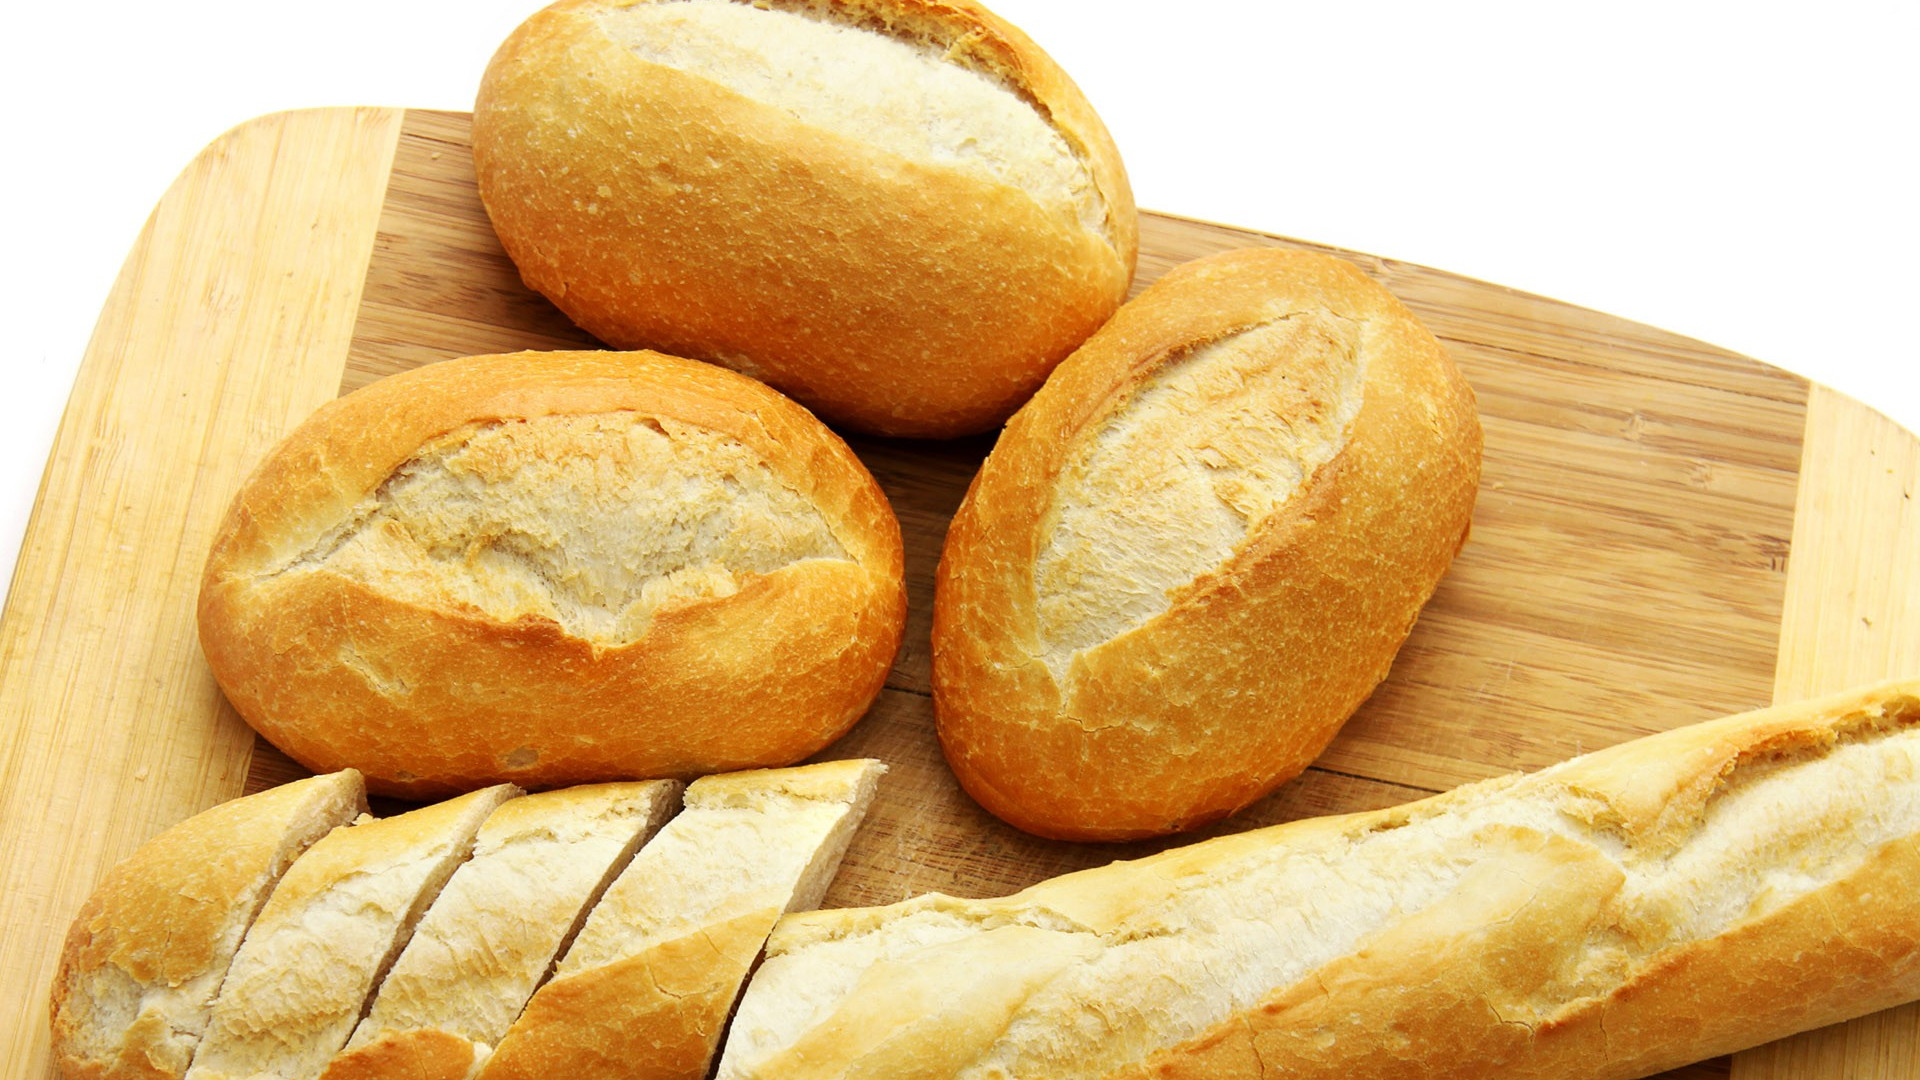   Không nên ăn quá nhiều bánh mì trắng vì chúng không giàu dinh dưỡng  